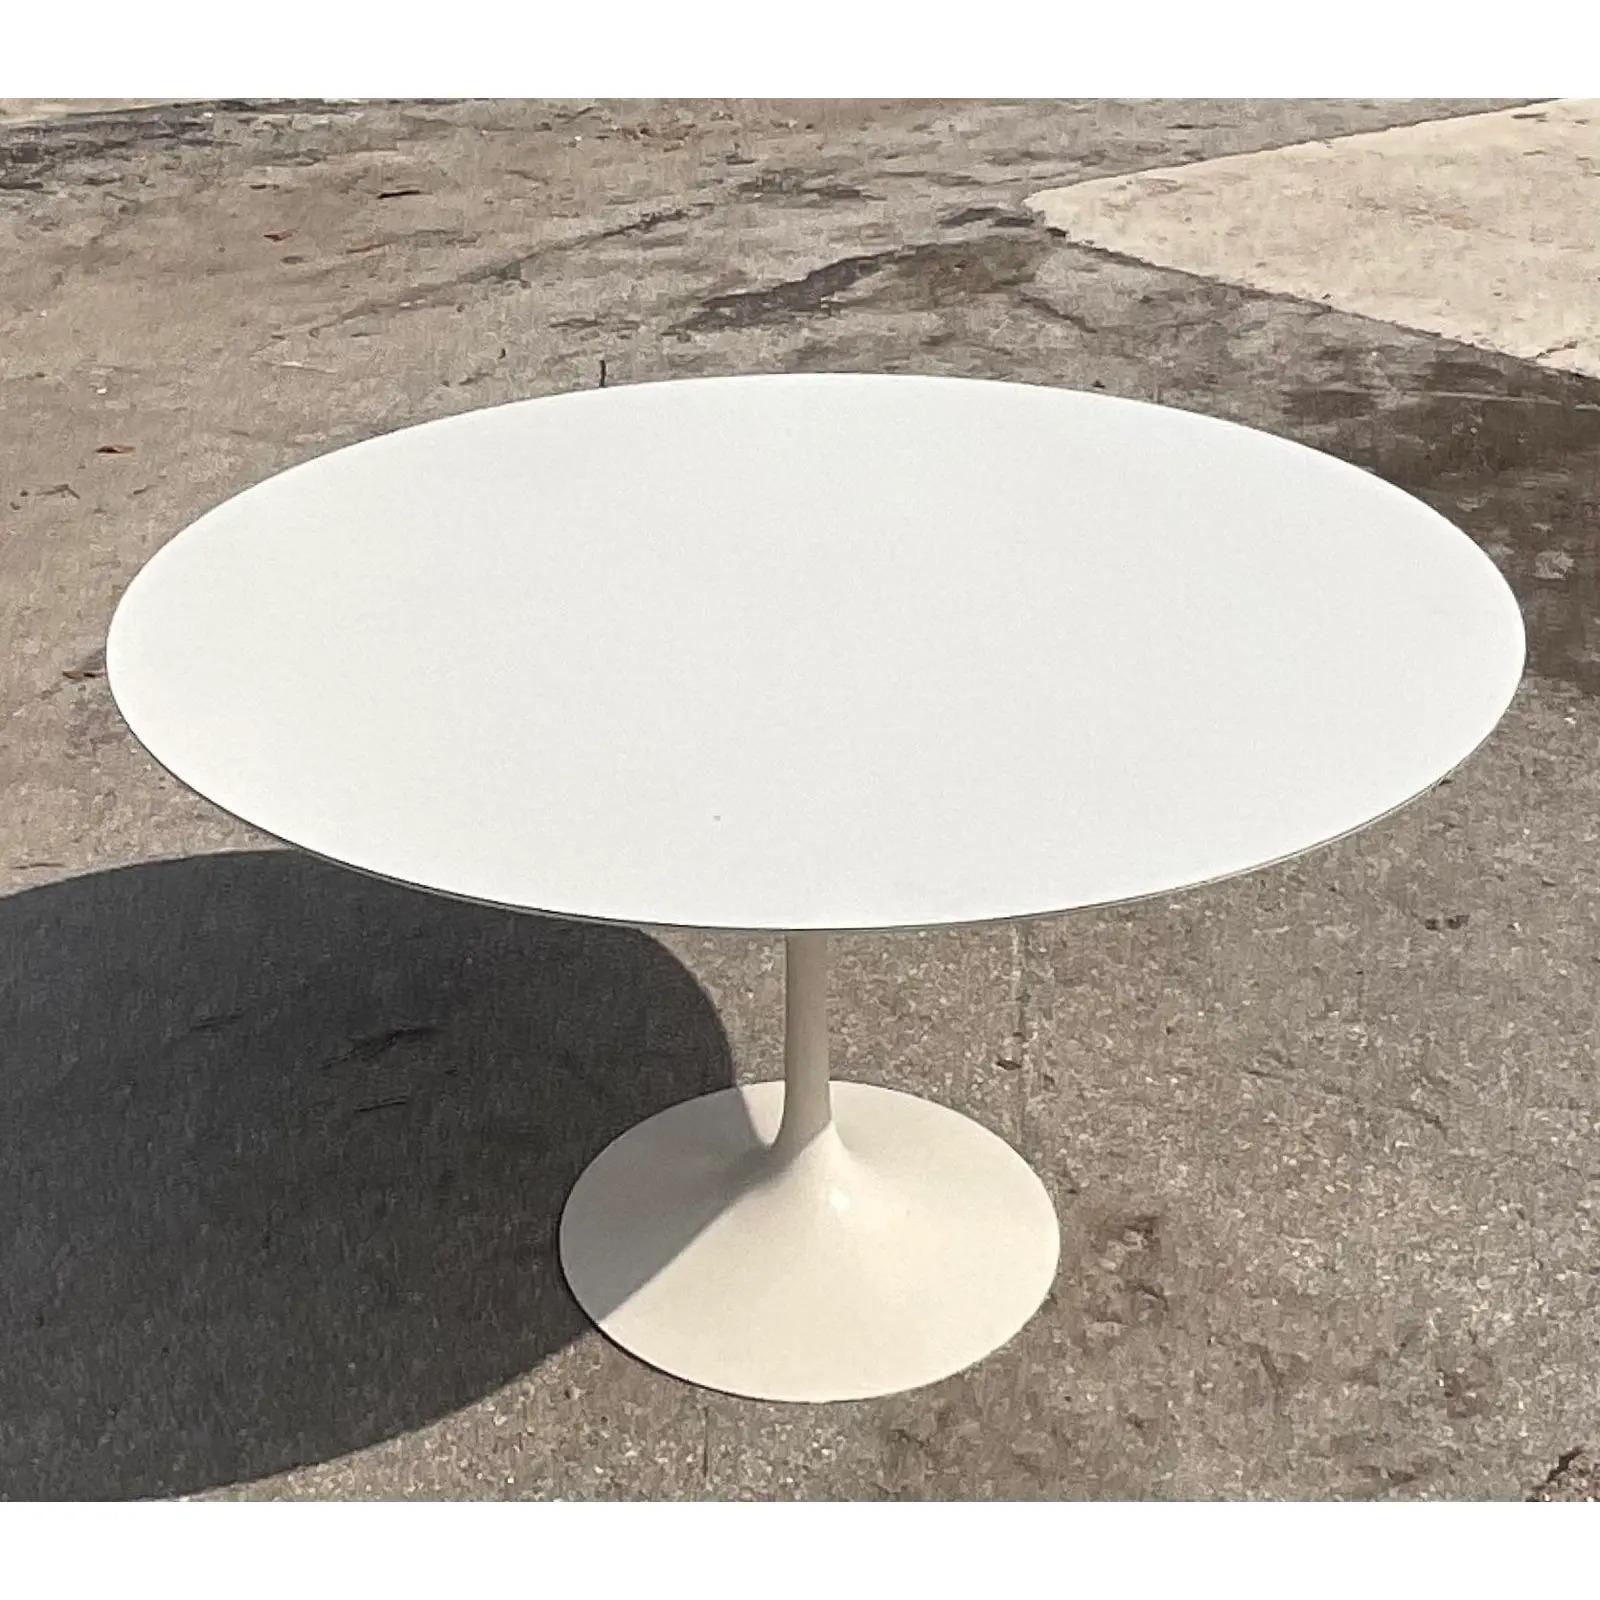 Midcentury Eero Saarinen for Knoll Round Dining Table 1